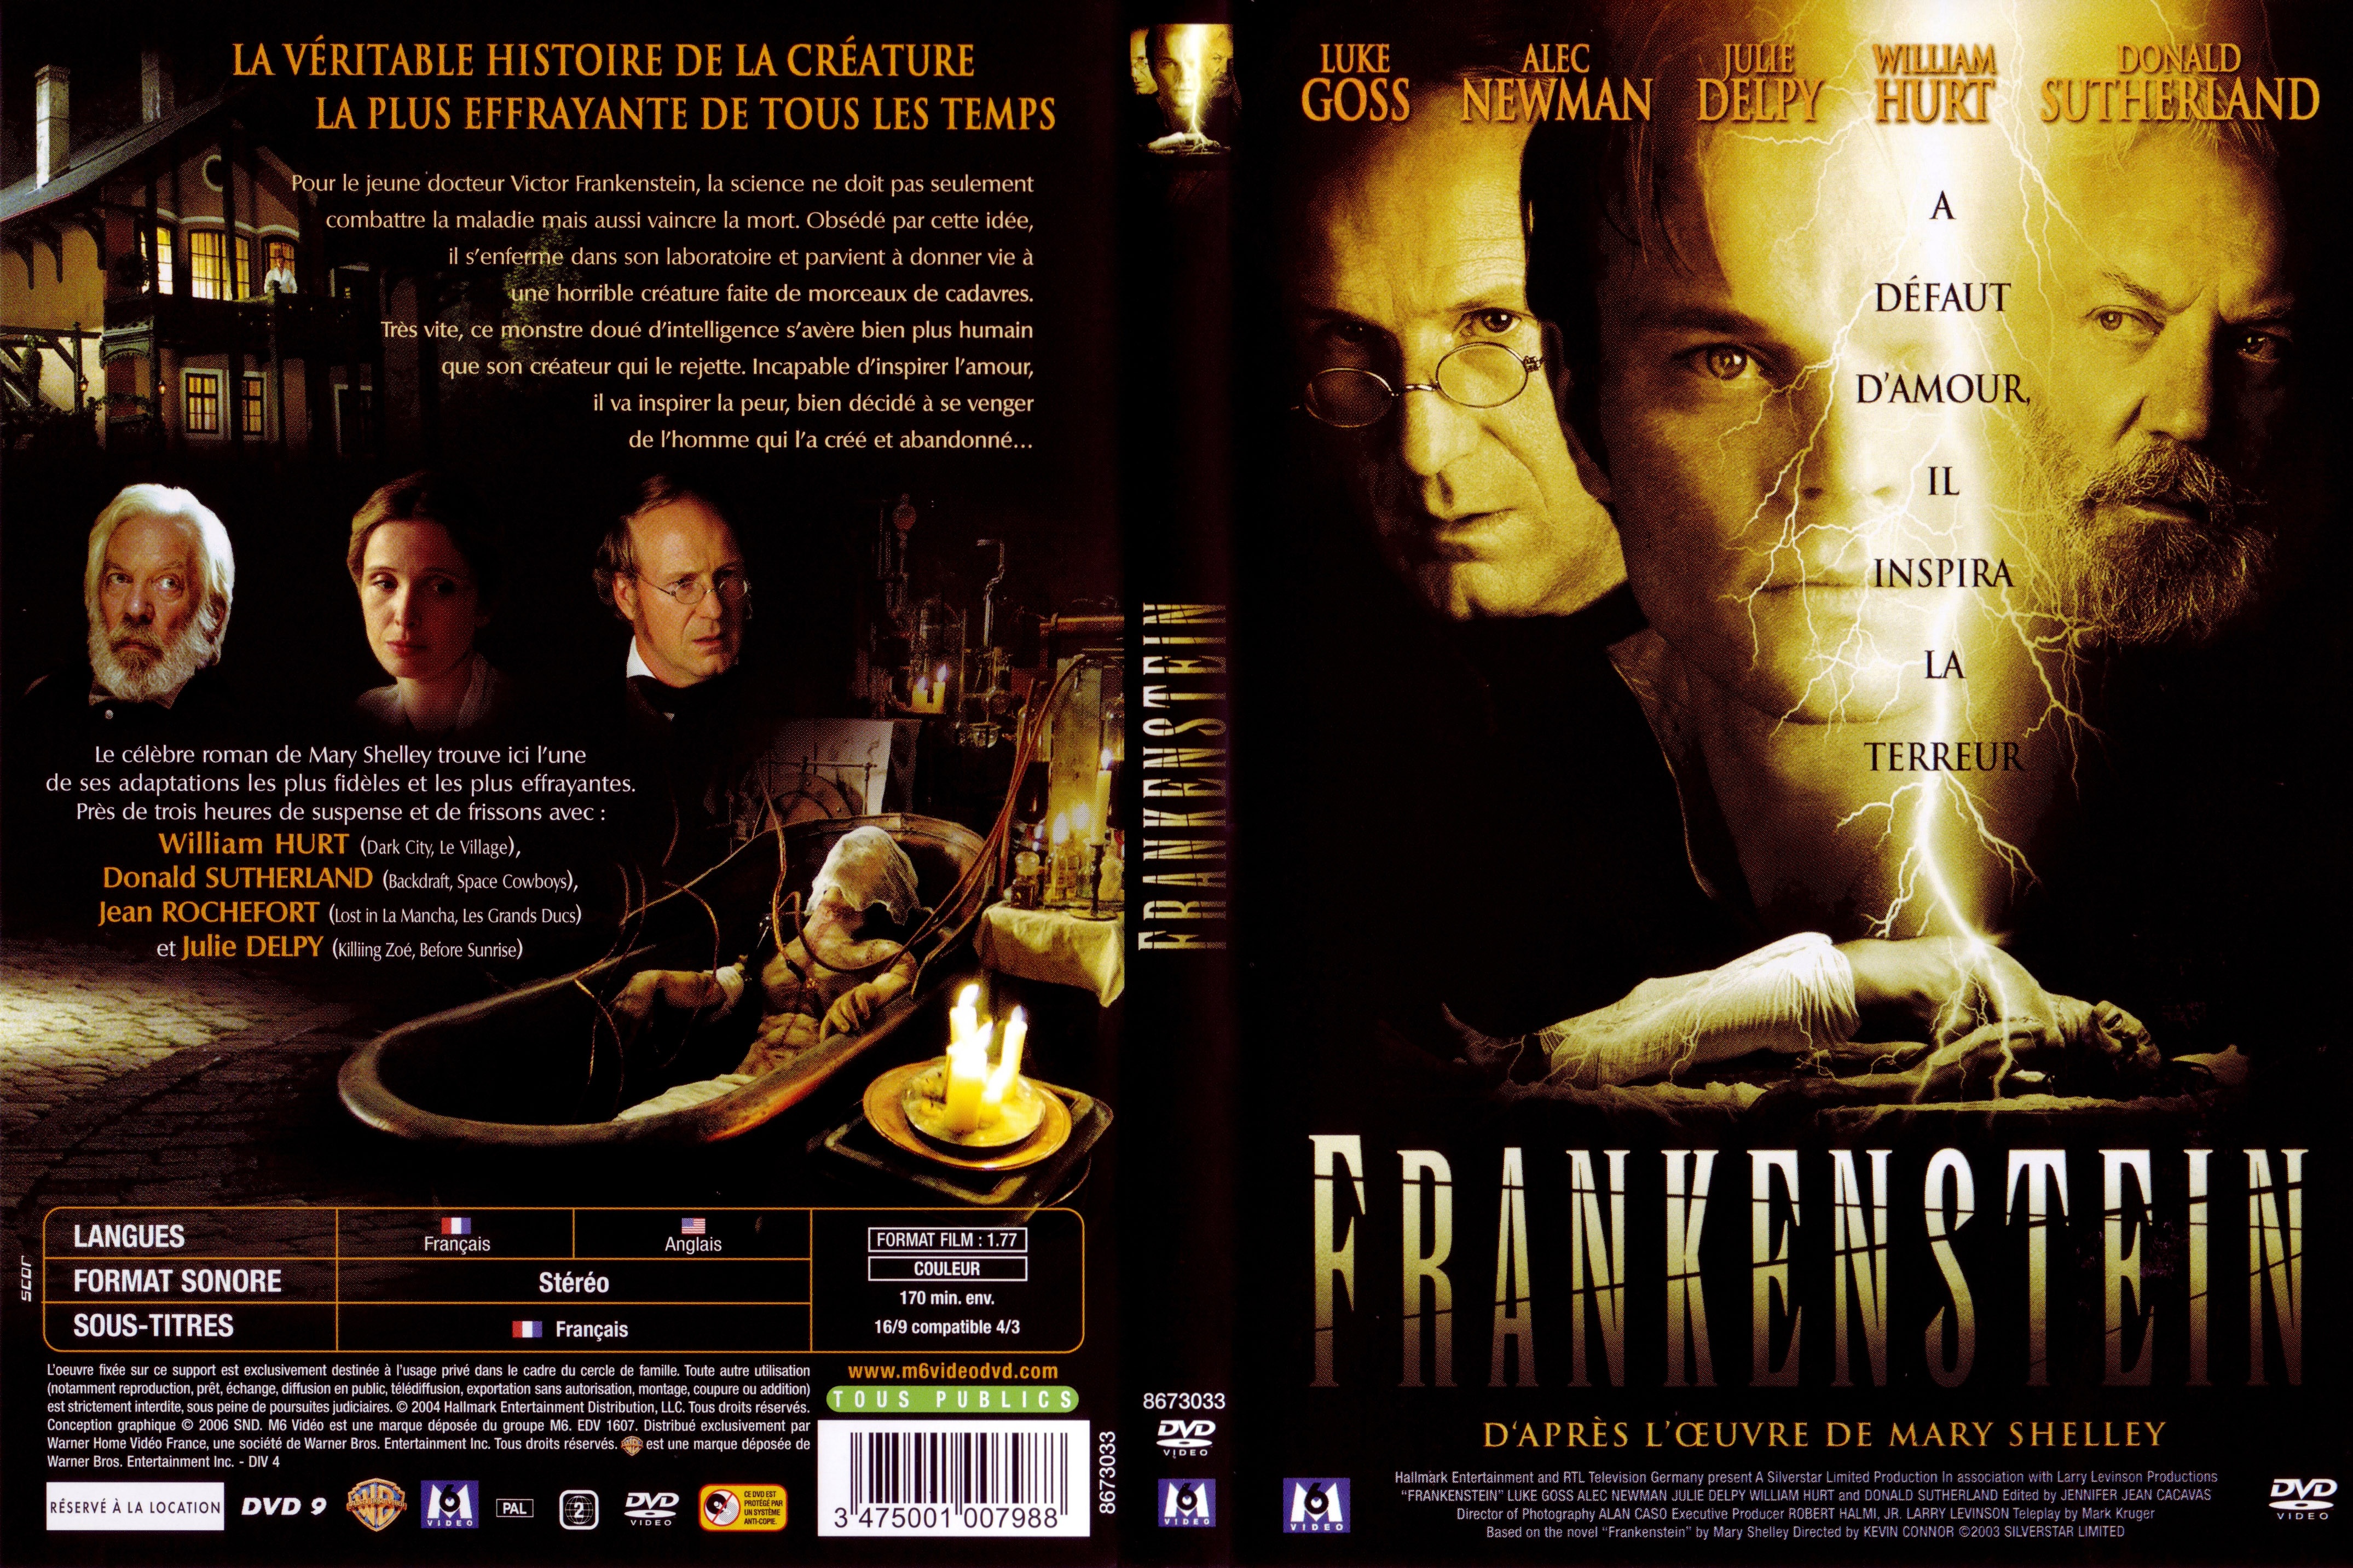 Jaquette DVD Frankenstein (Donald Sutherland)